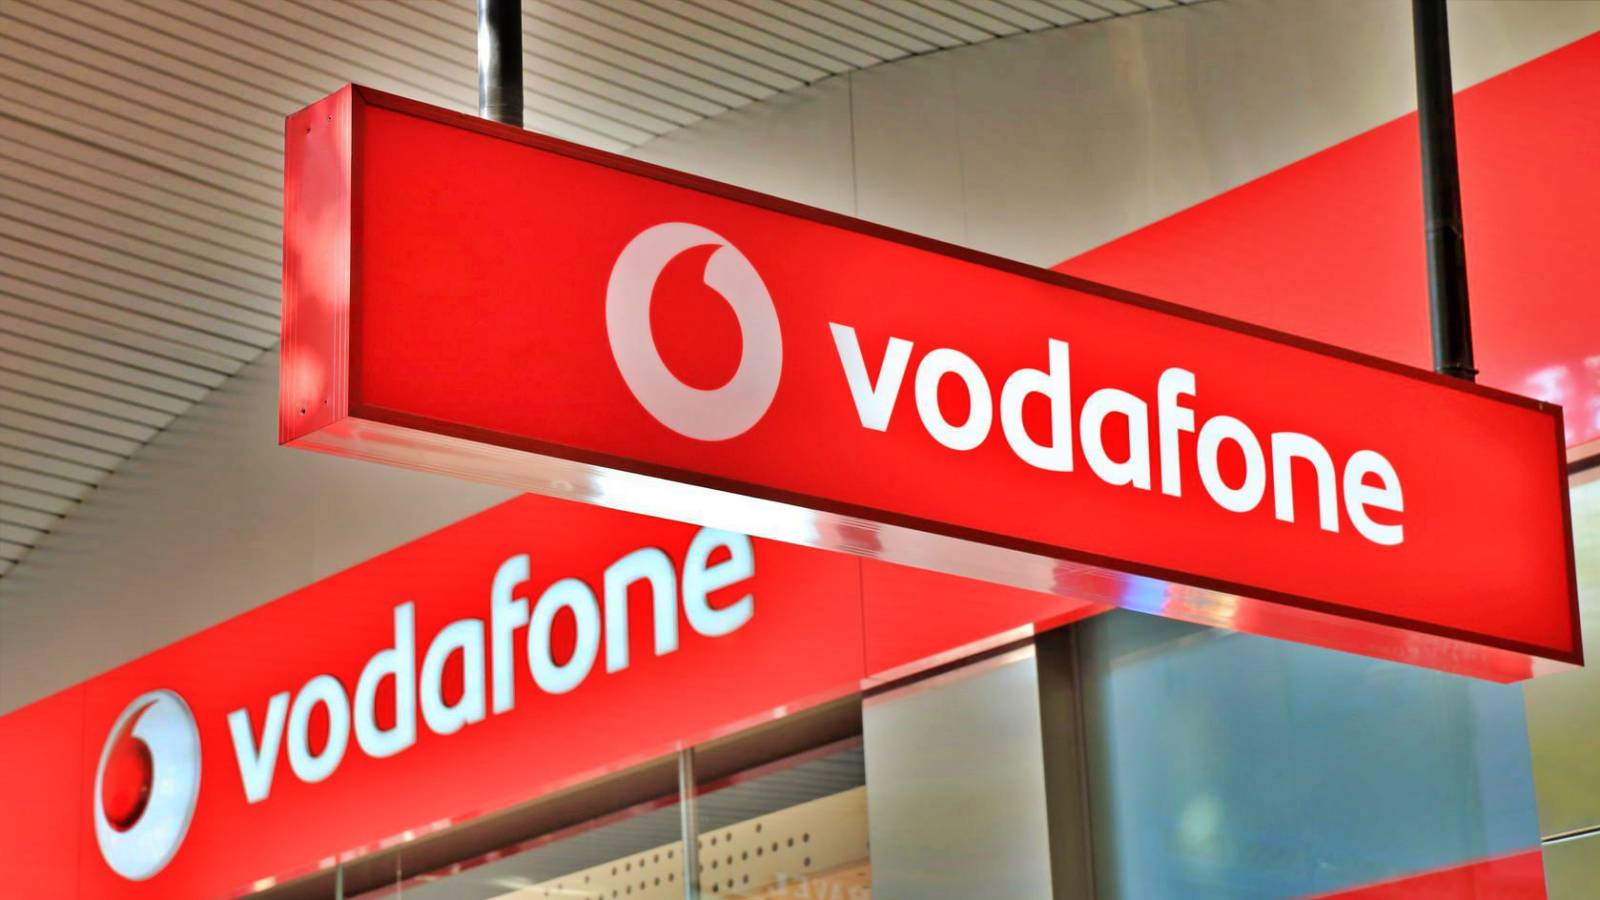 I clienti Vodafone vengono avvisati GRATUITAMENTE dall'operatore per 3 mesi